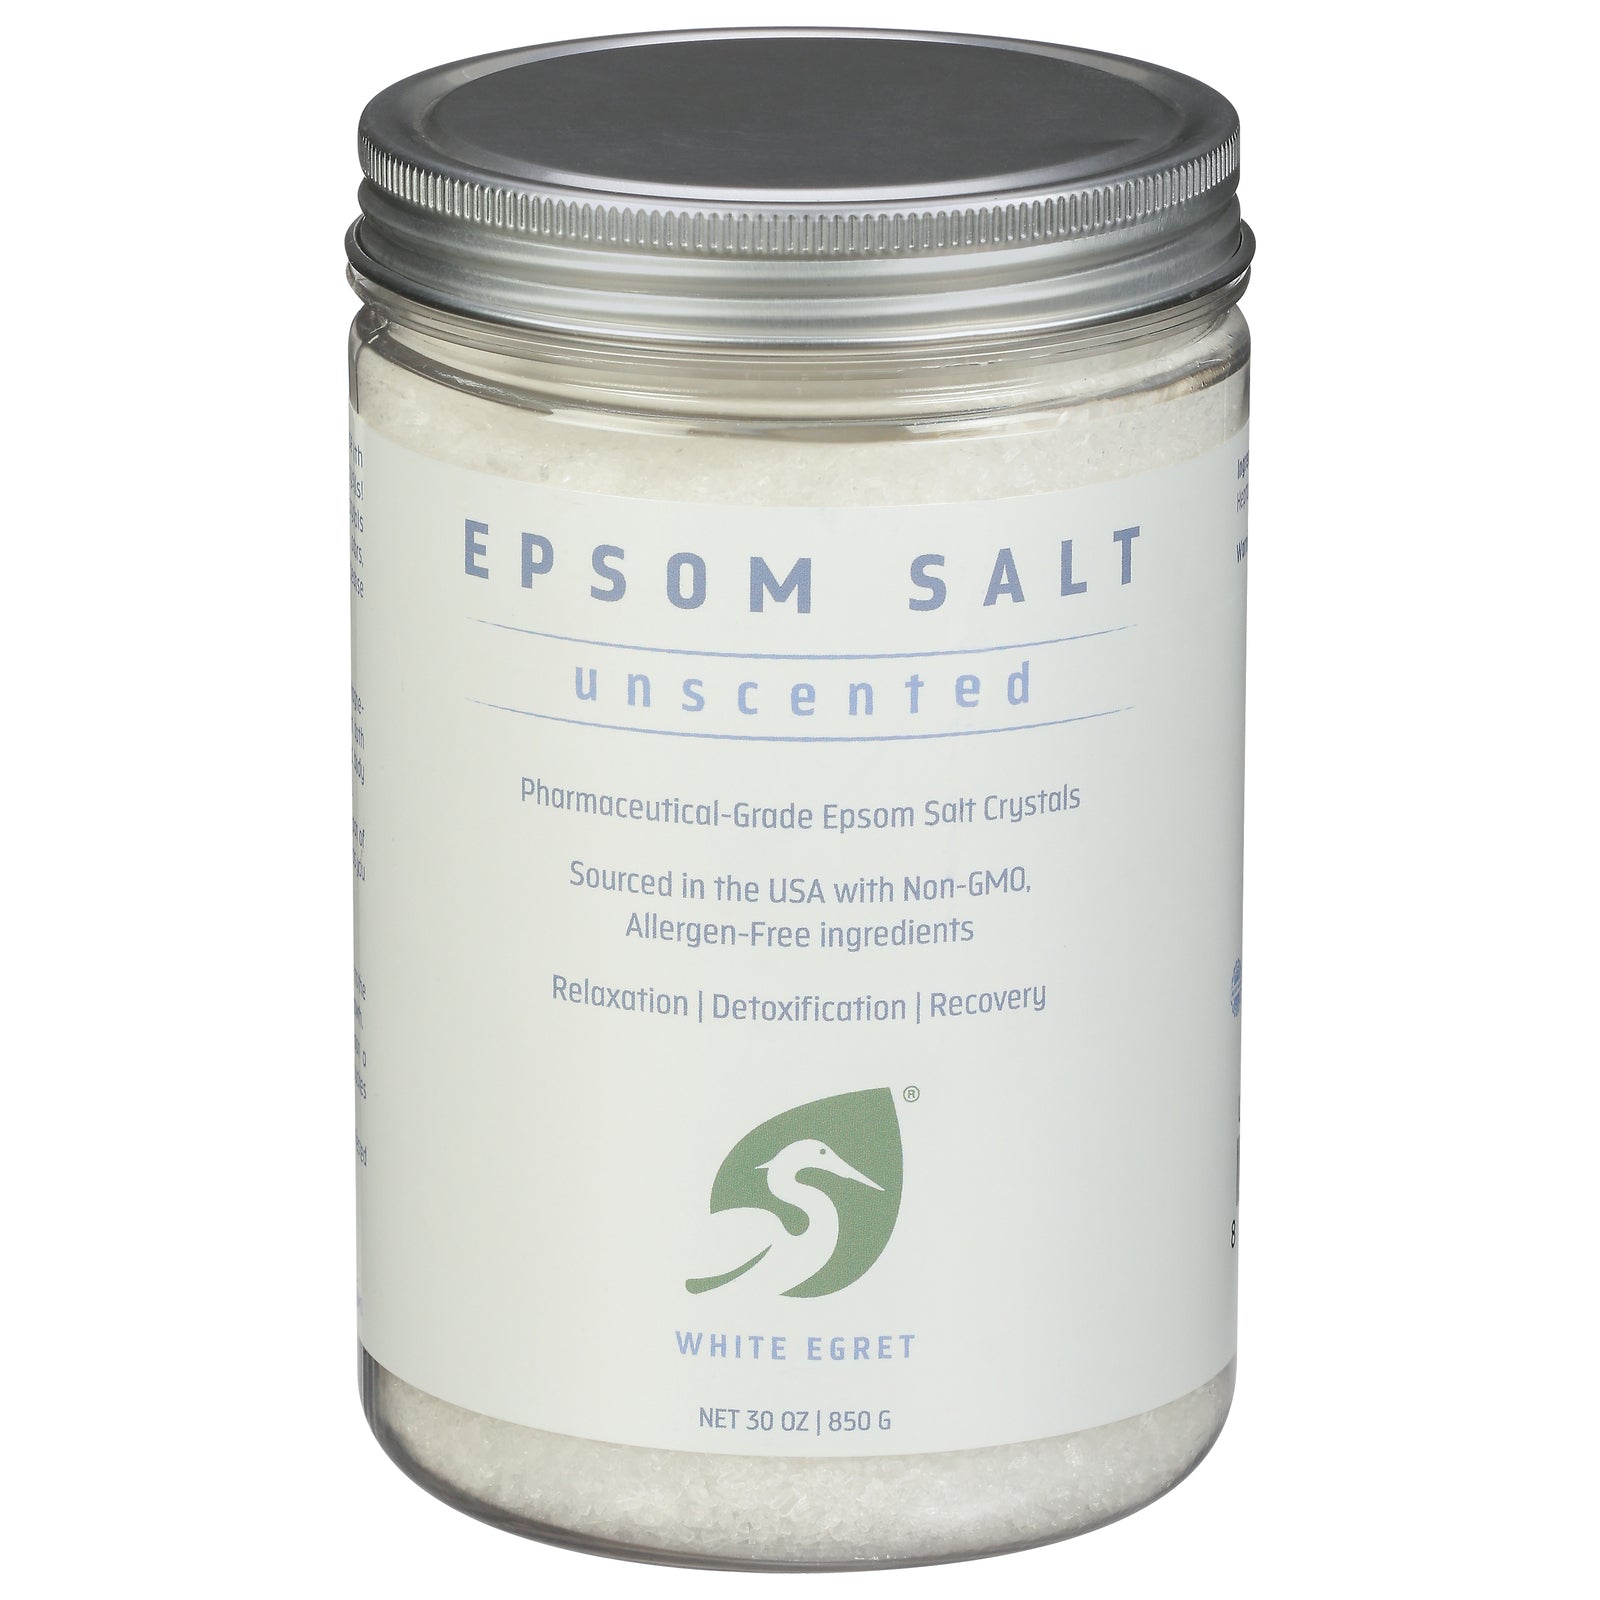 White Egret - Epsom Salt Unscented - 1 Each - 30 Oz